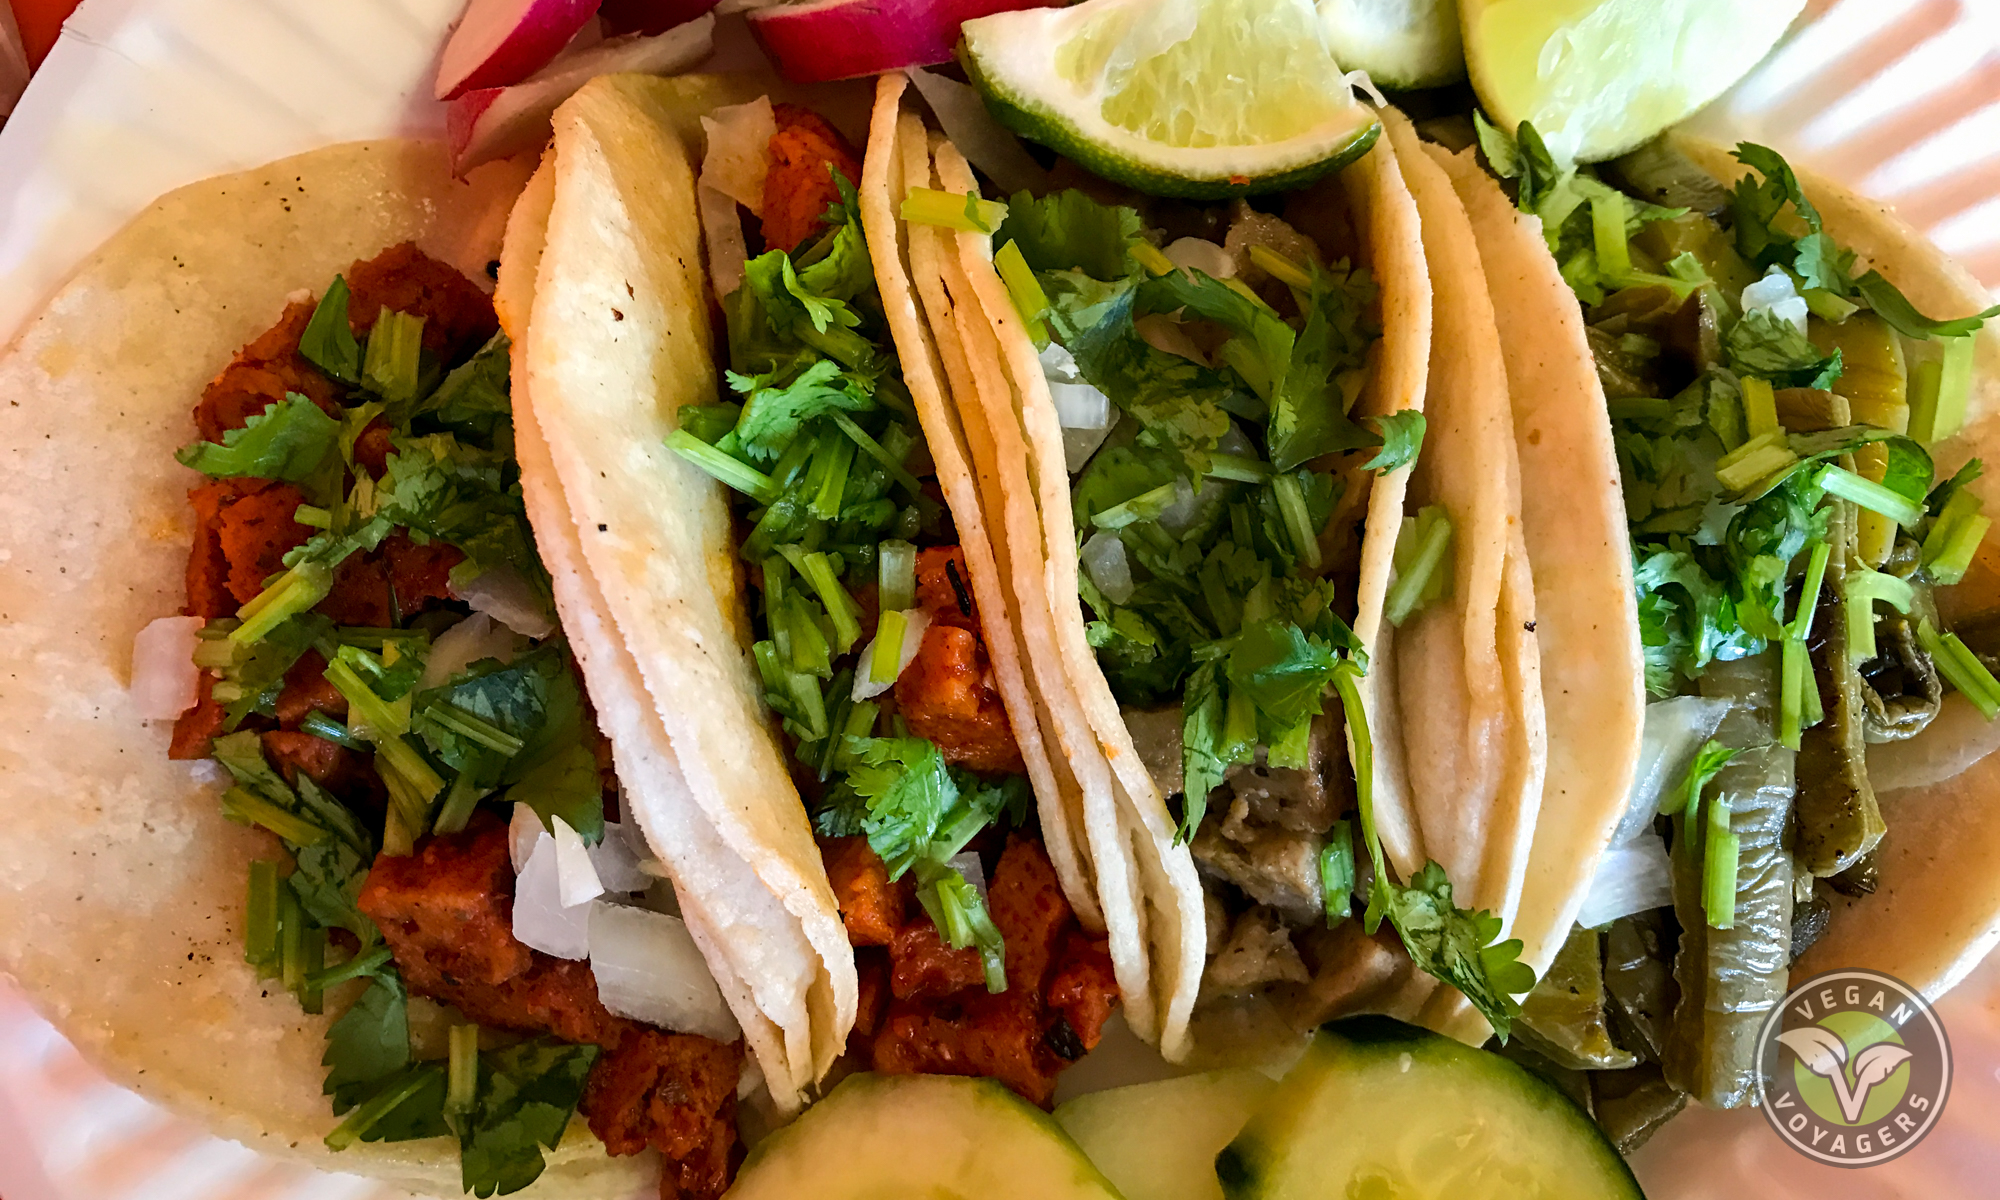 Pancho's Vegan Tacos, Las Vegas, Nevada - Vegan Voyagers